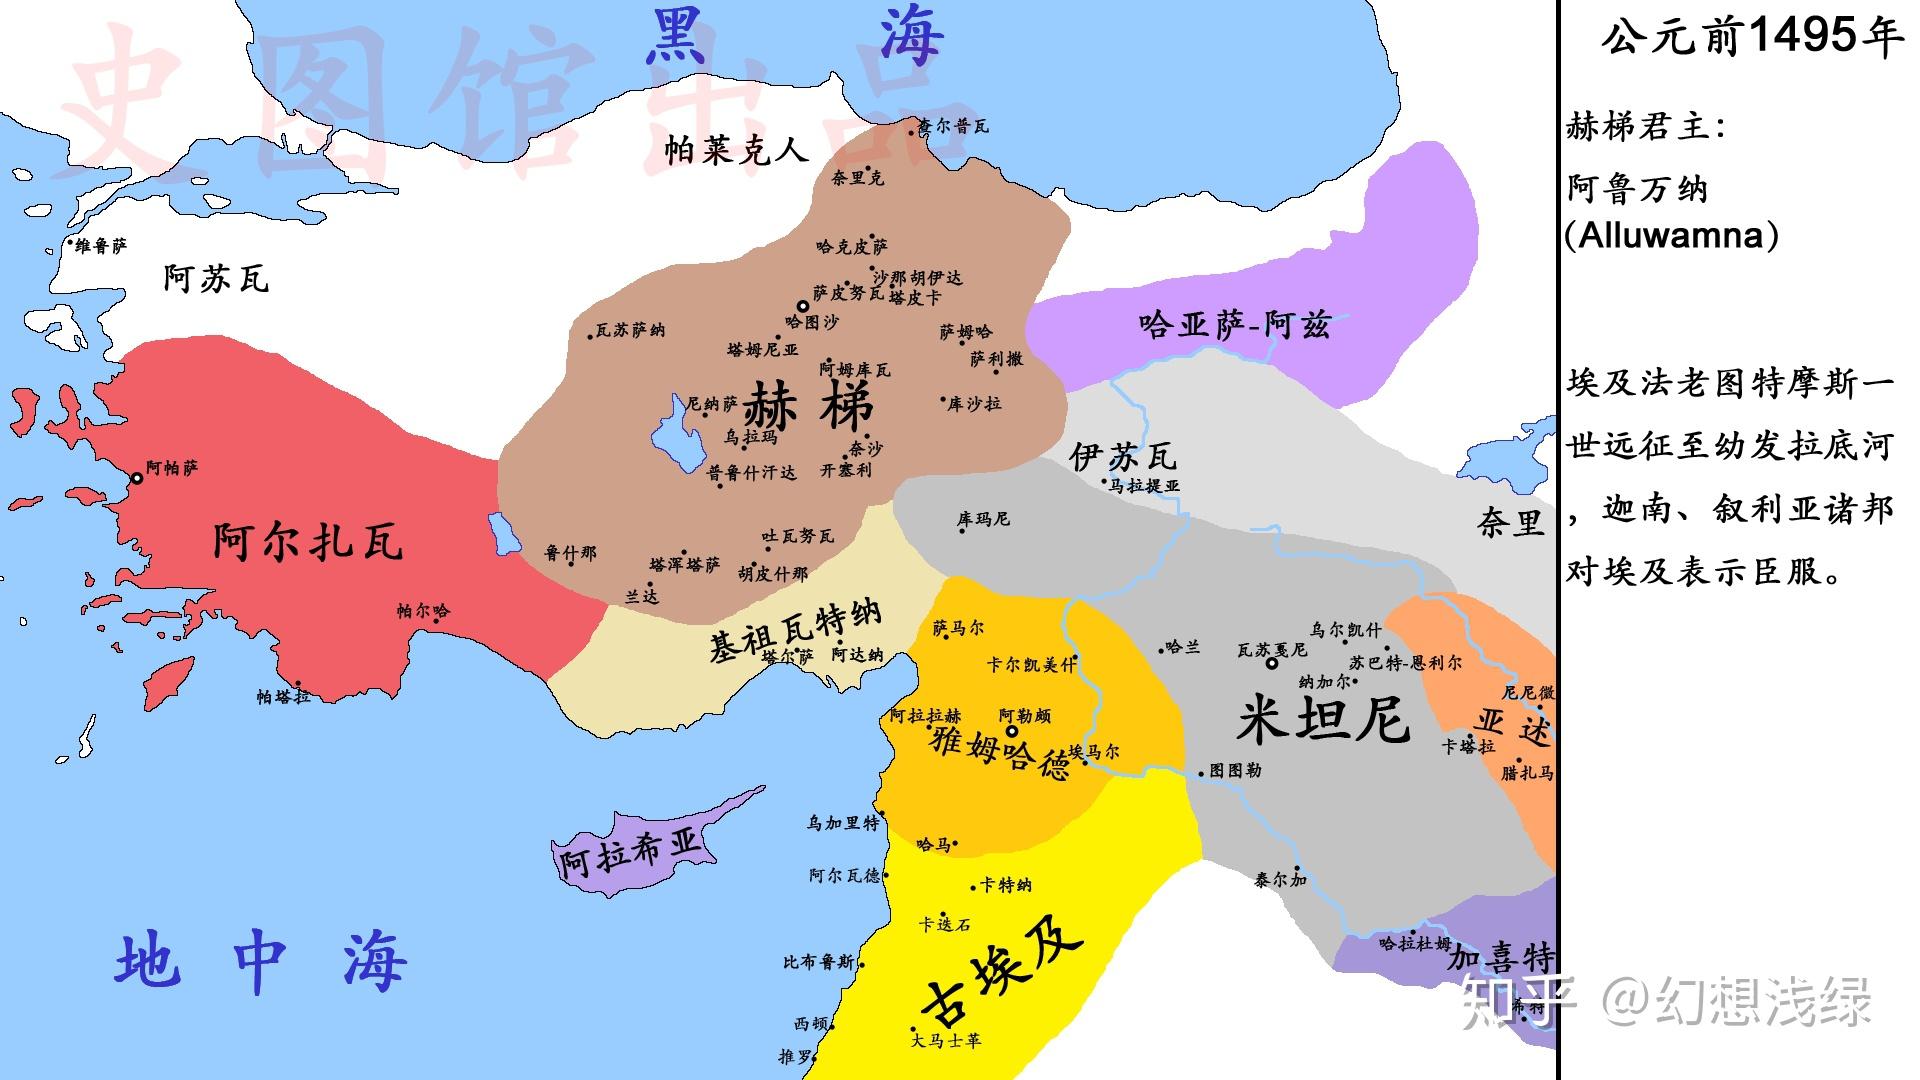 【史图馆】赫梯历代疆域变化2 中王国时期